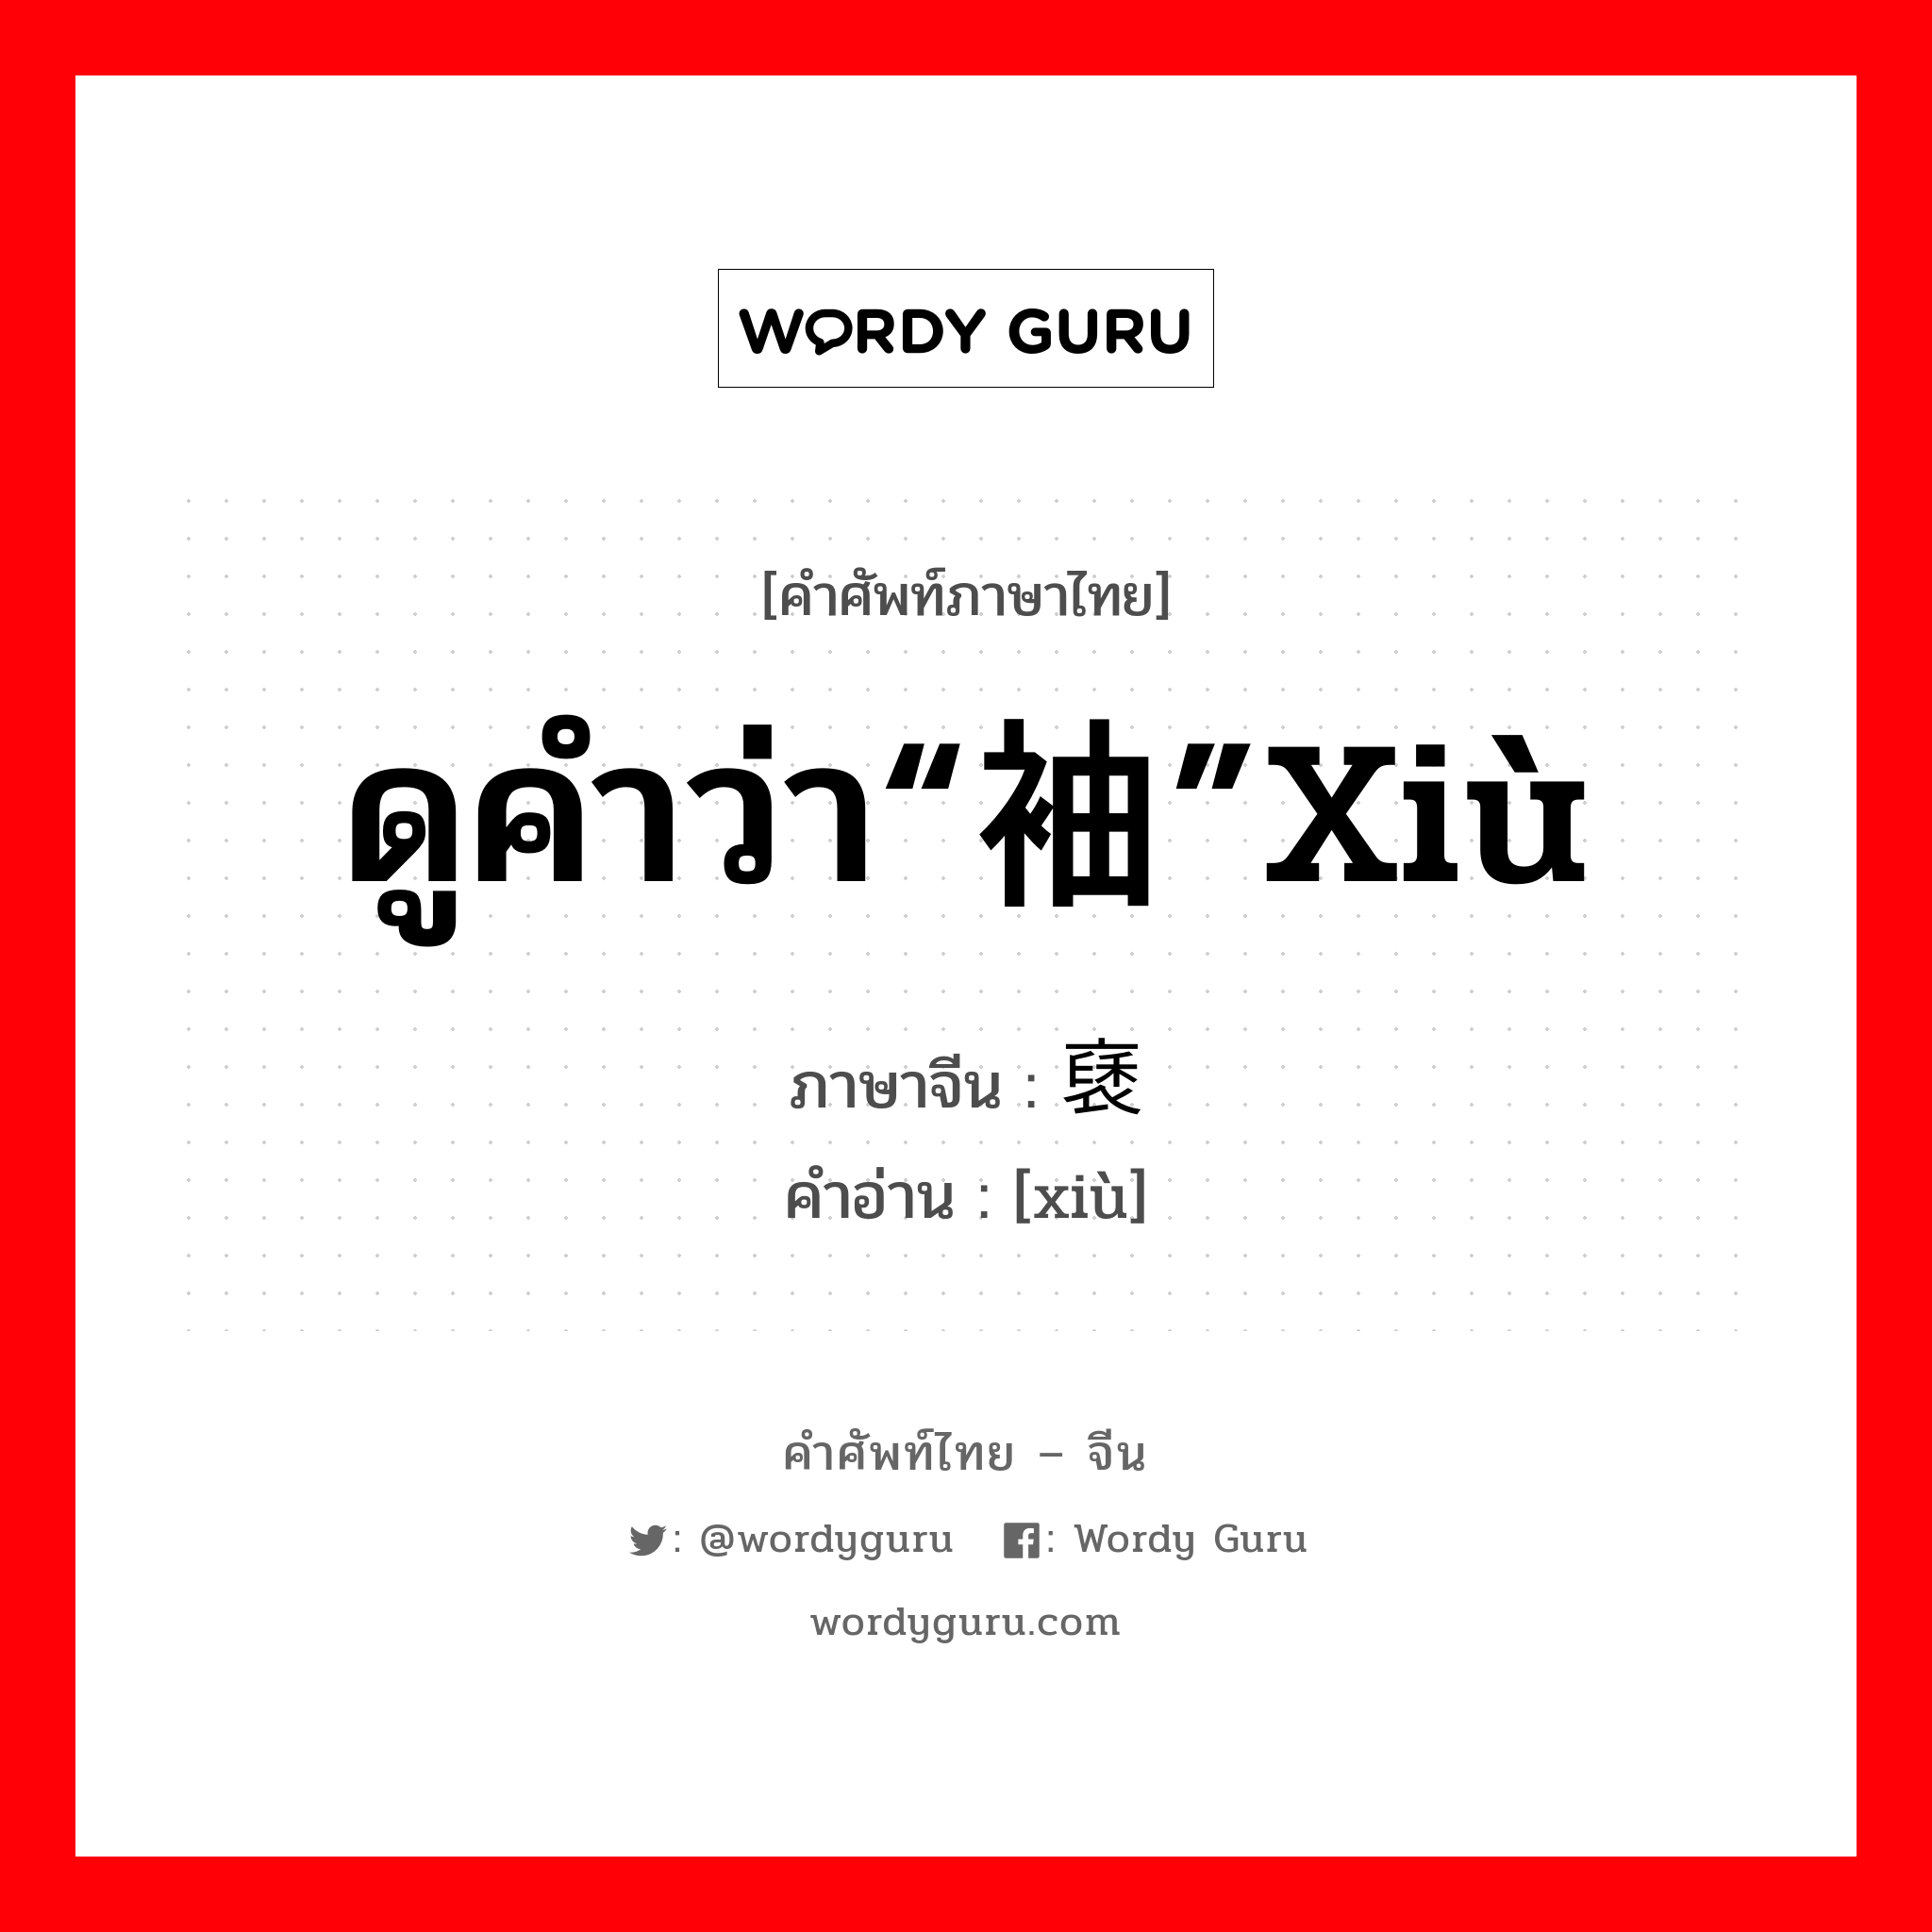 ดูคำว่า“袖”xiù ภาษาจีนคืออะไร, คำศัพท์ภาษาไทย - จีน ดูคำว่า“袖”xiù ภาษาจีน 褎 คำอ่าน [xiù]